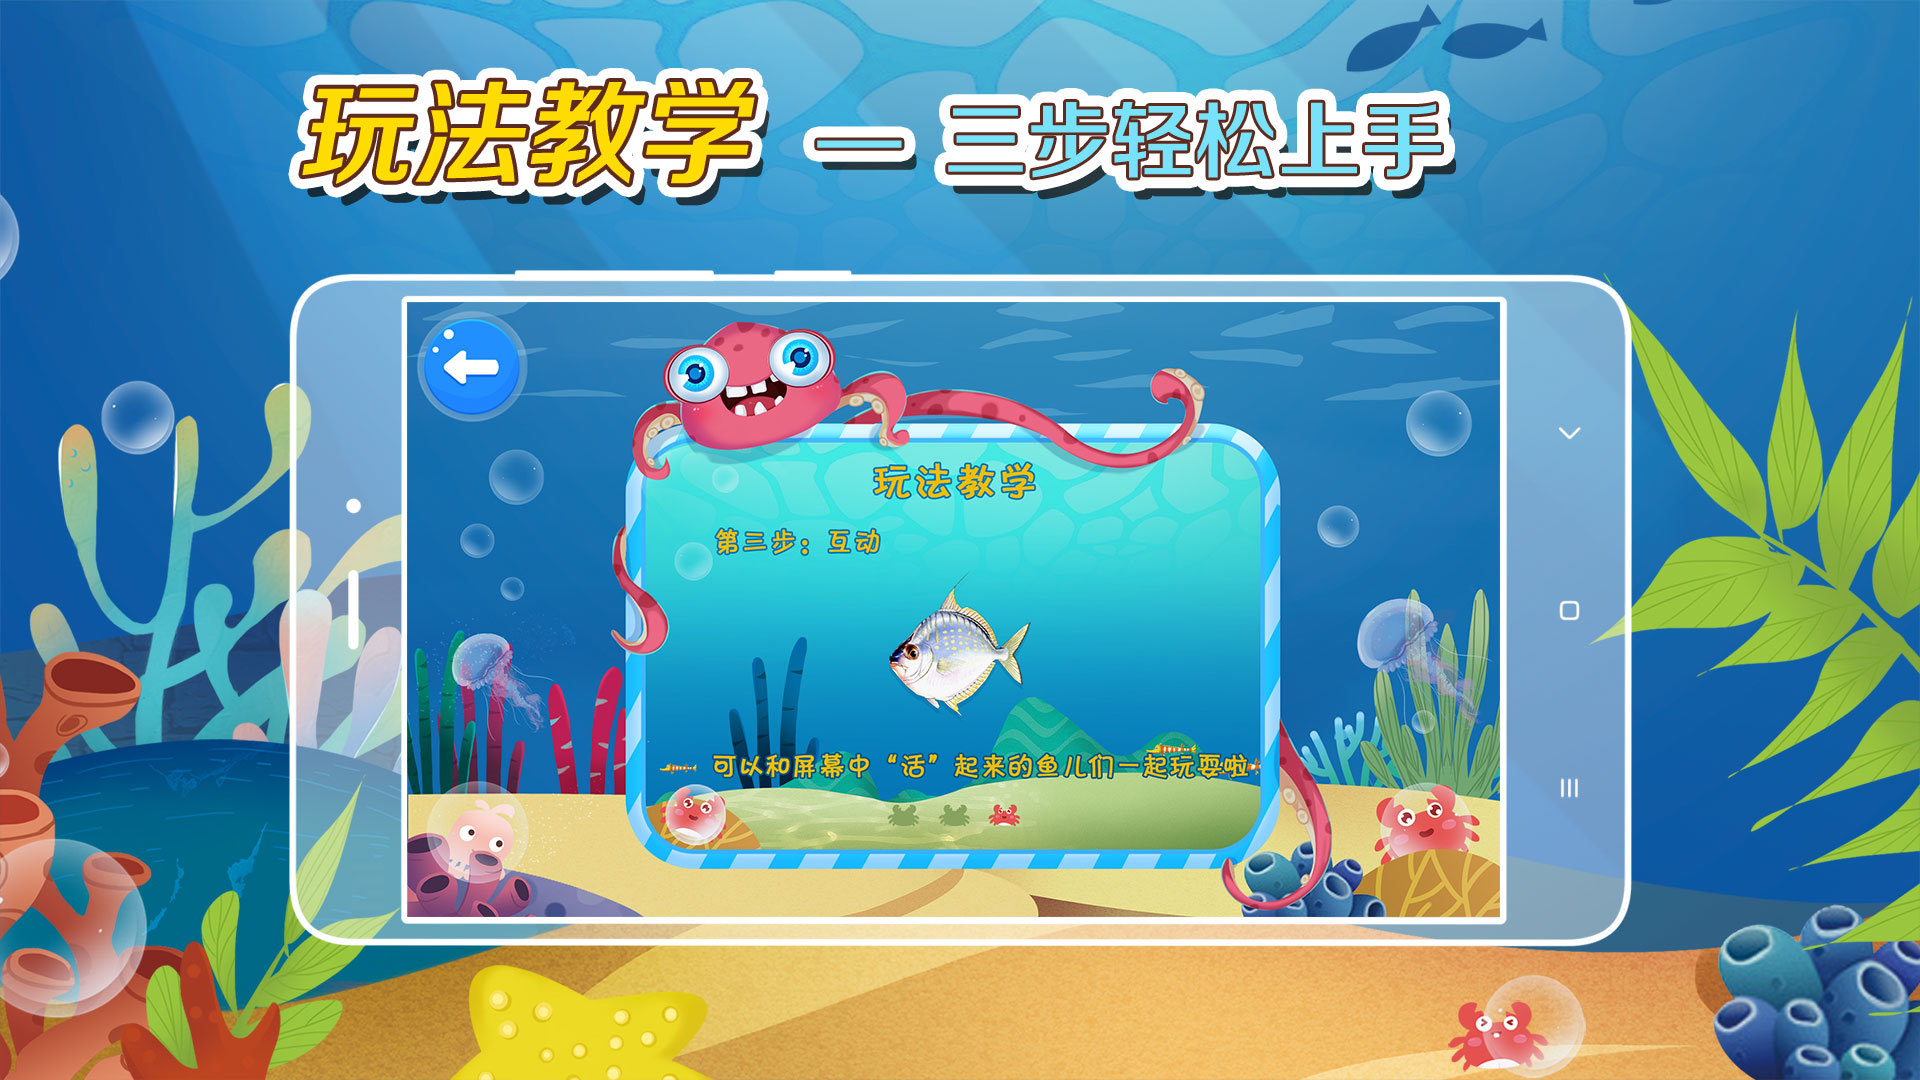 缤纷的鱼下载,官网安卓版app最新下载安装